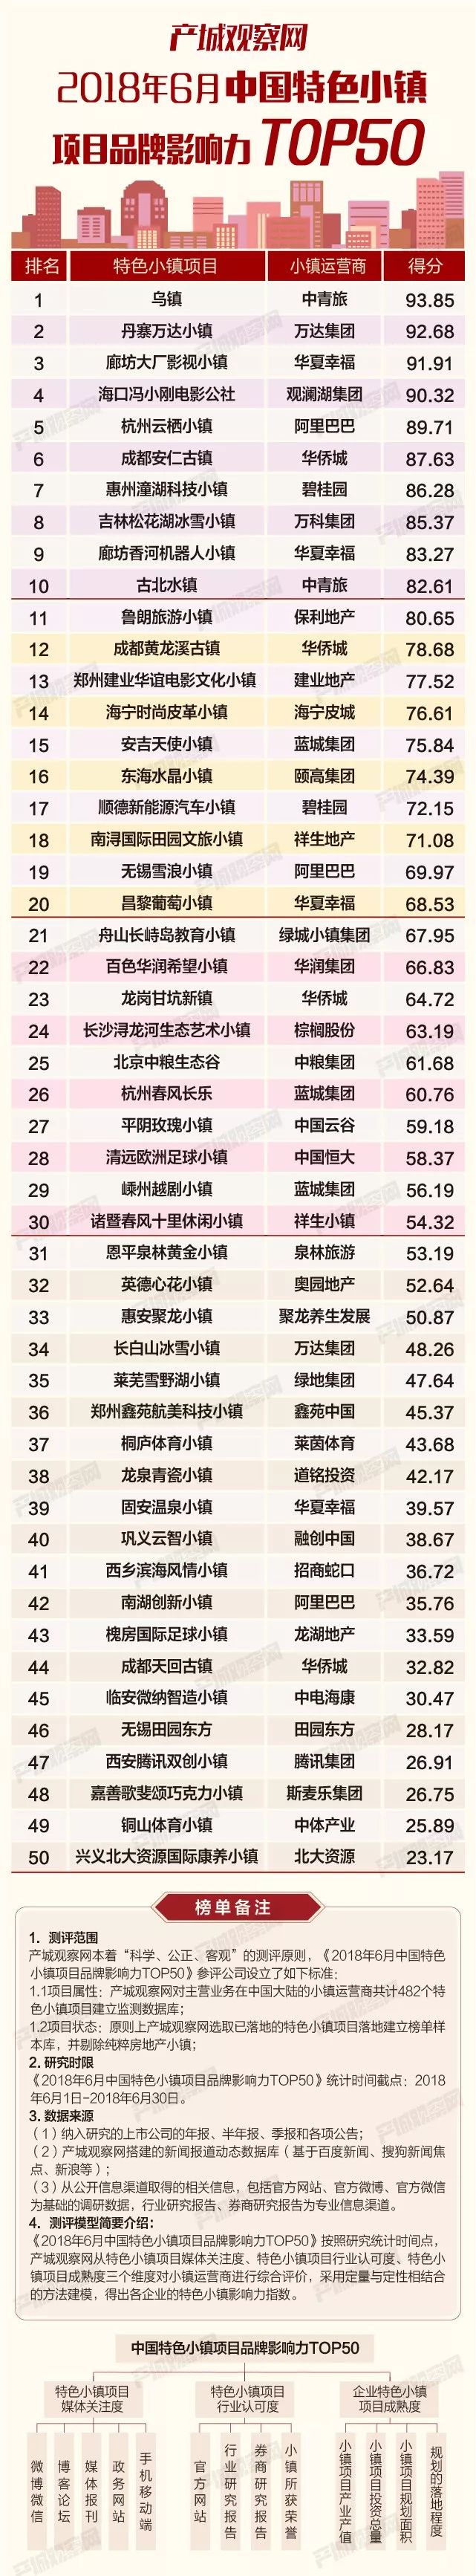 6月中国特色小镇项目品牌影响力TOP50发布 体育小镇热度高居不下-中国网地产